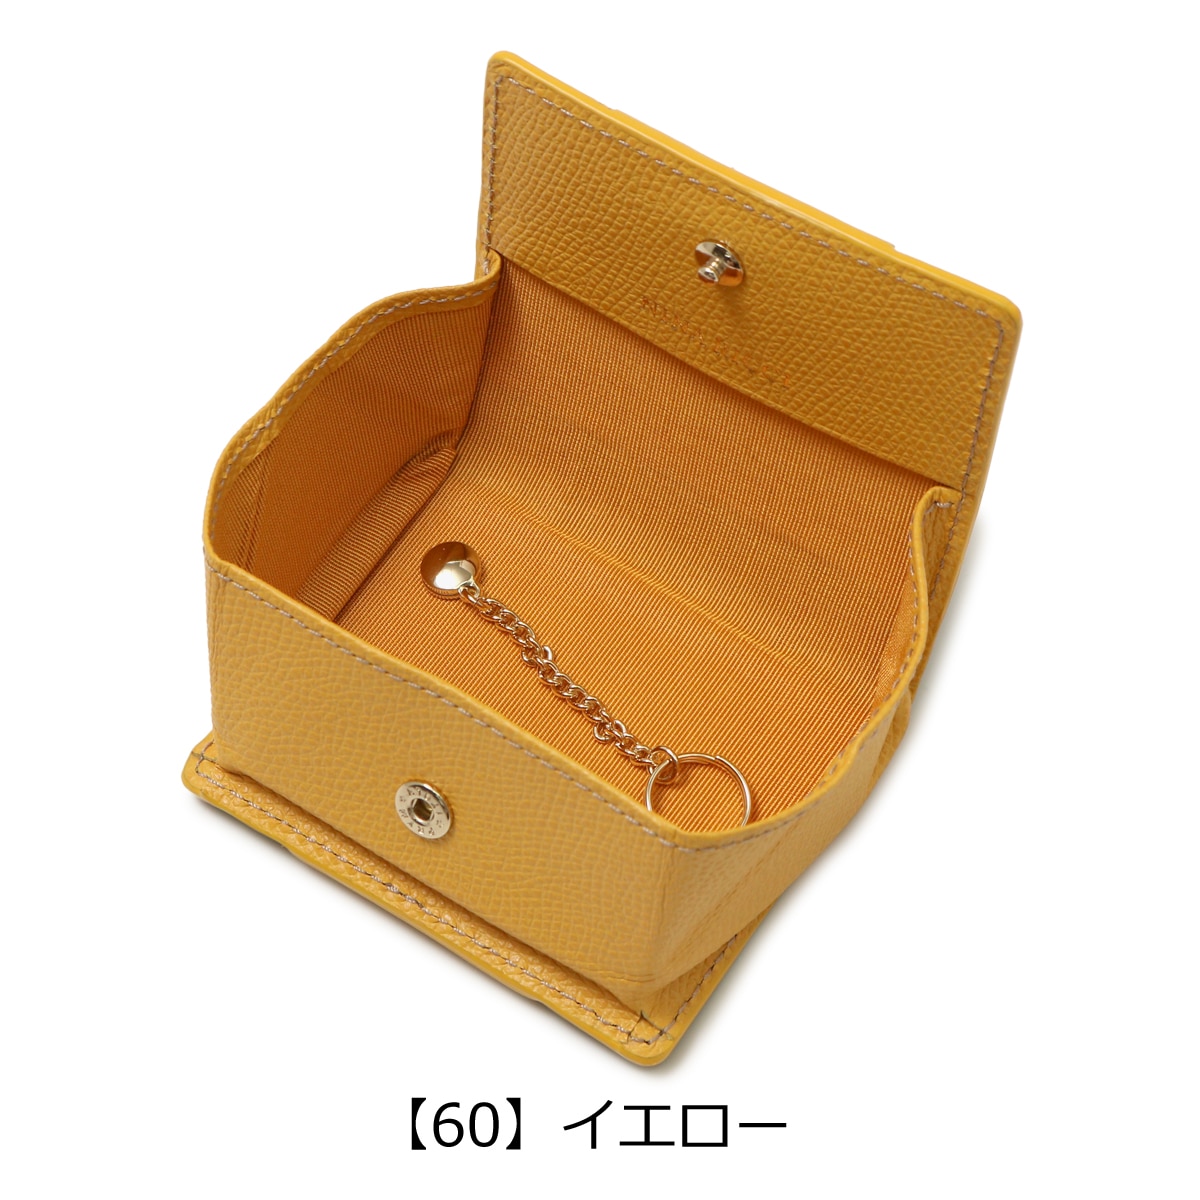 ニナリッチ 小銭入れ コインケース コンパクト 小さめ ボックス型